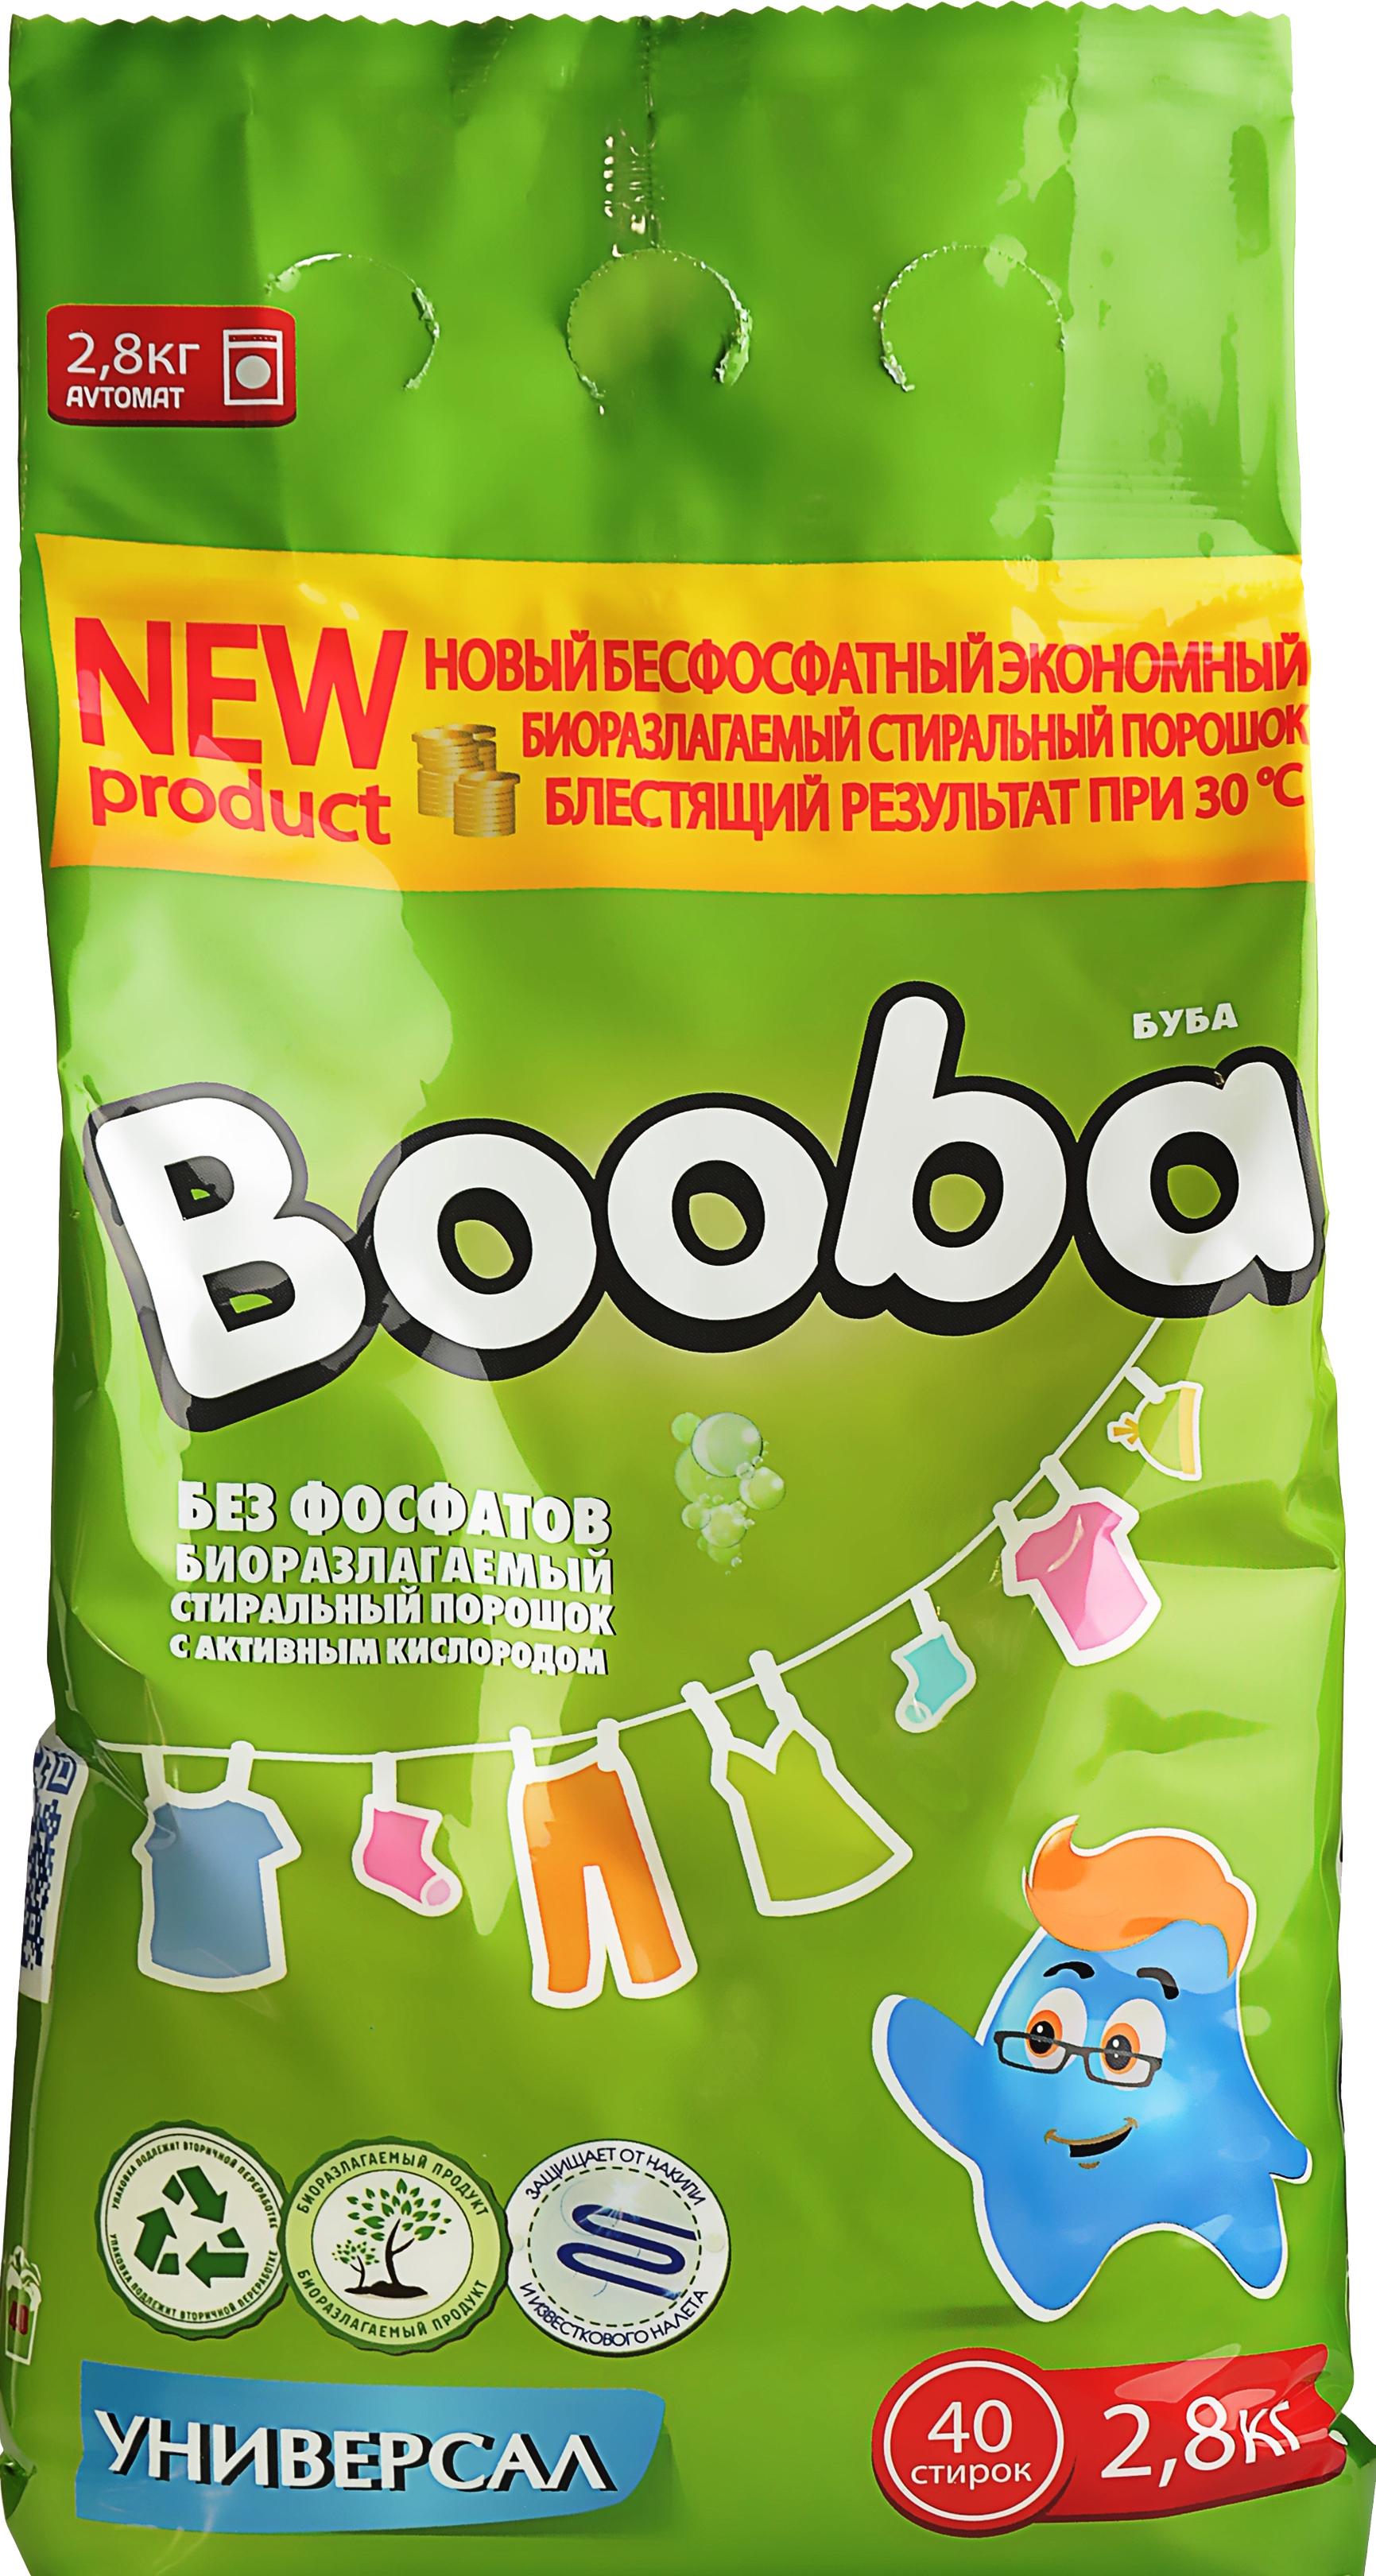 Пральний порошок Booba Універсал 40 циклів прання 2,8 кг (12245)